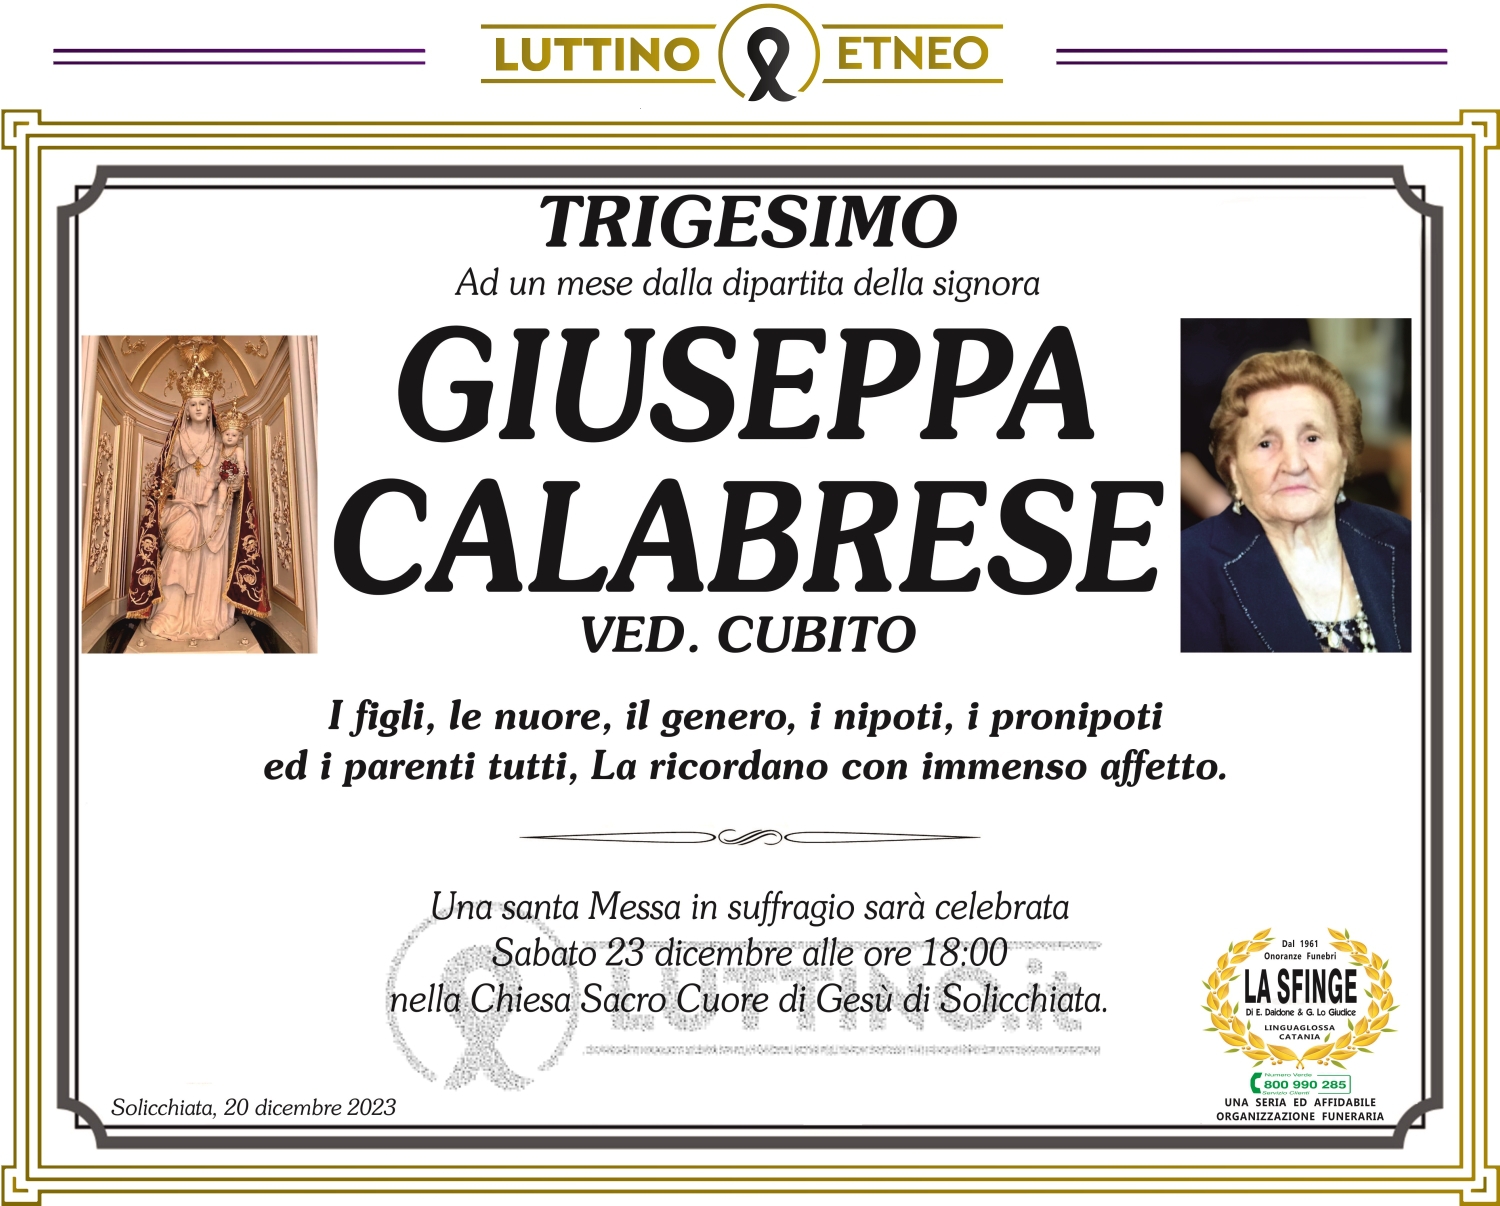 Giuseppa Calabrese